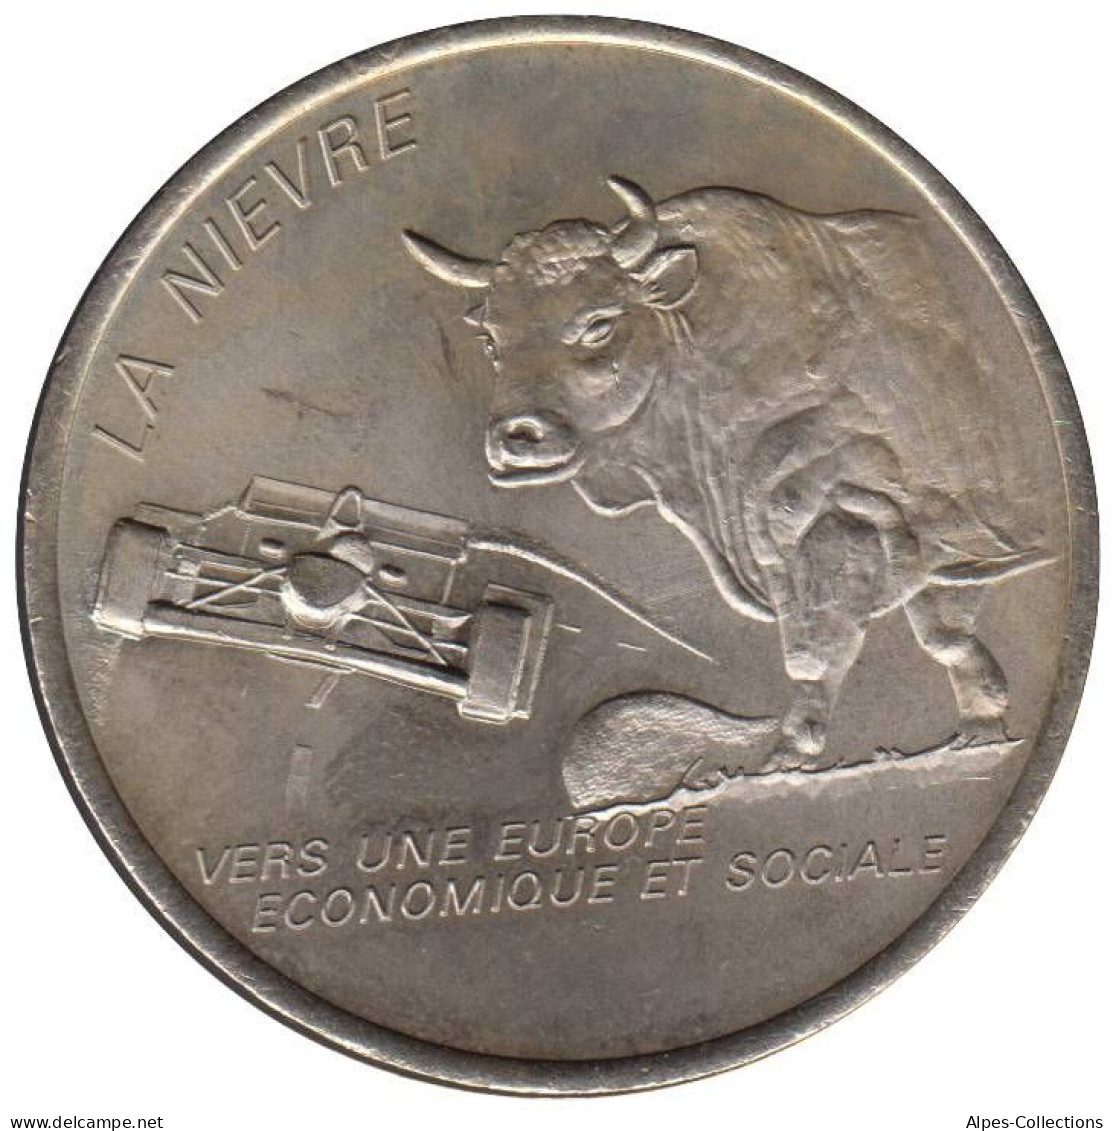 NIEVRE - EU0020.2 - 2 EURO DES VILLES - Réf: T342 - 1997 - Euros Des Villes